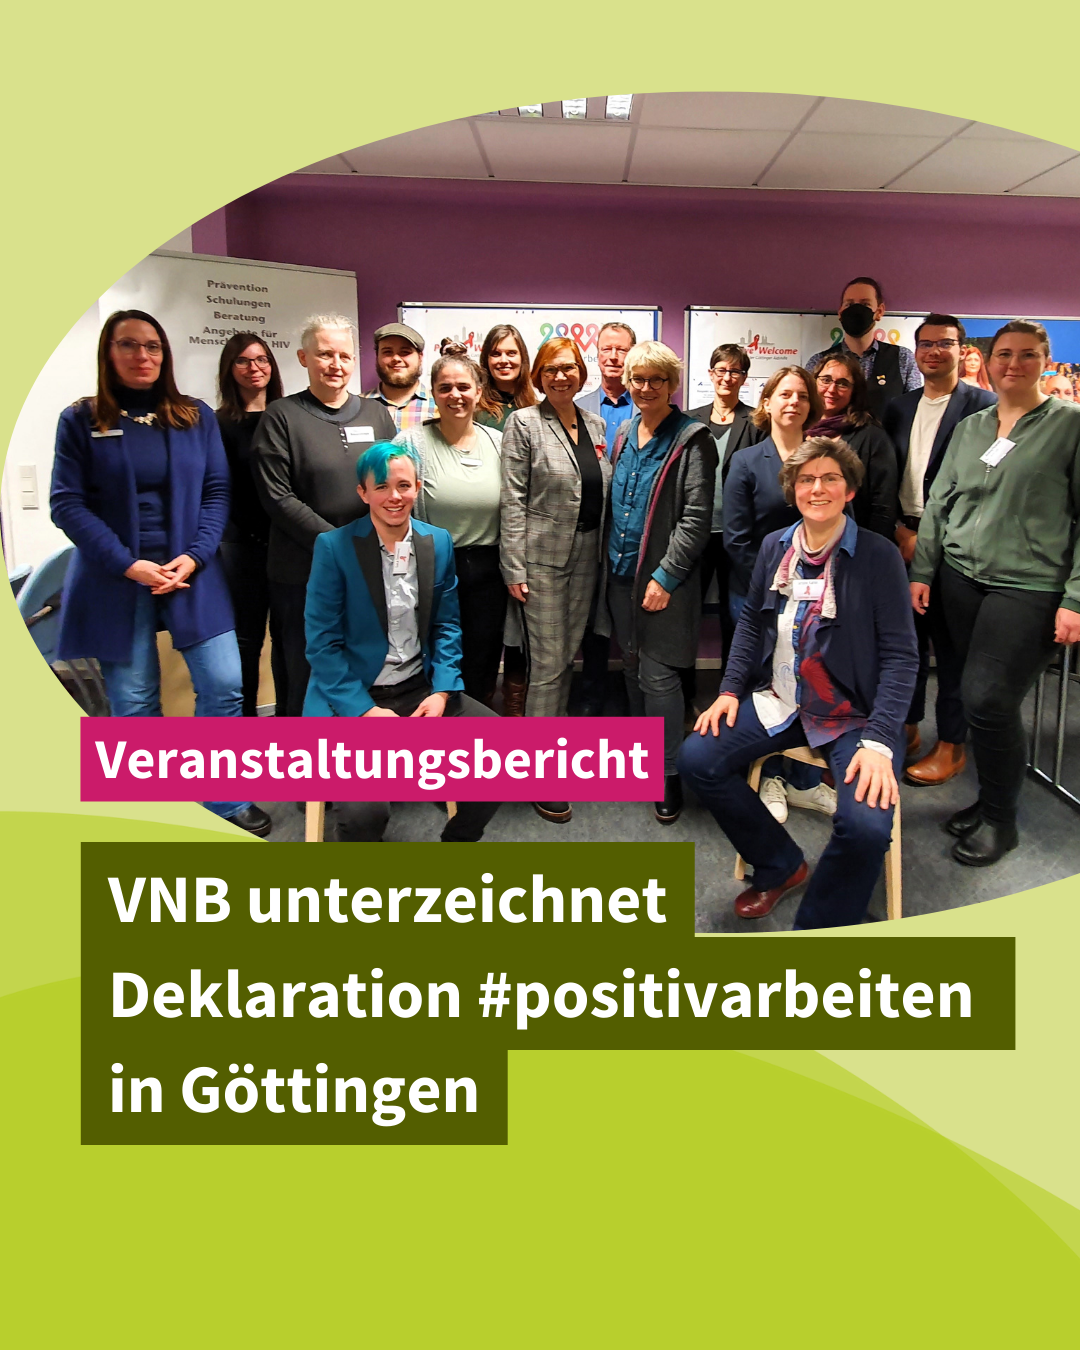 VNB unterzeichnet Deklaration #positivarbeiten in Göttingen